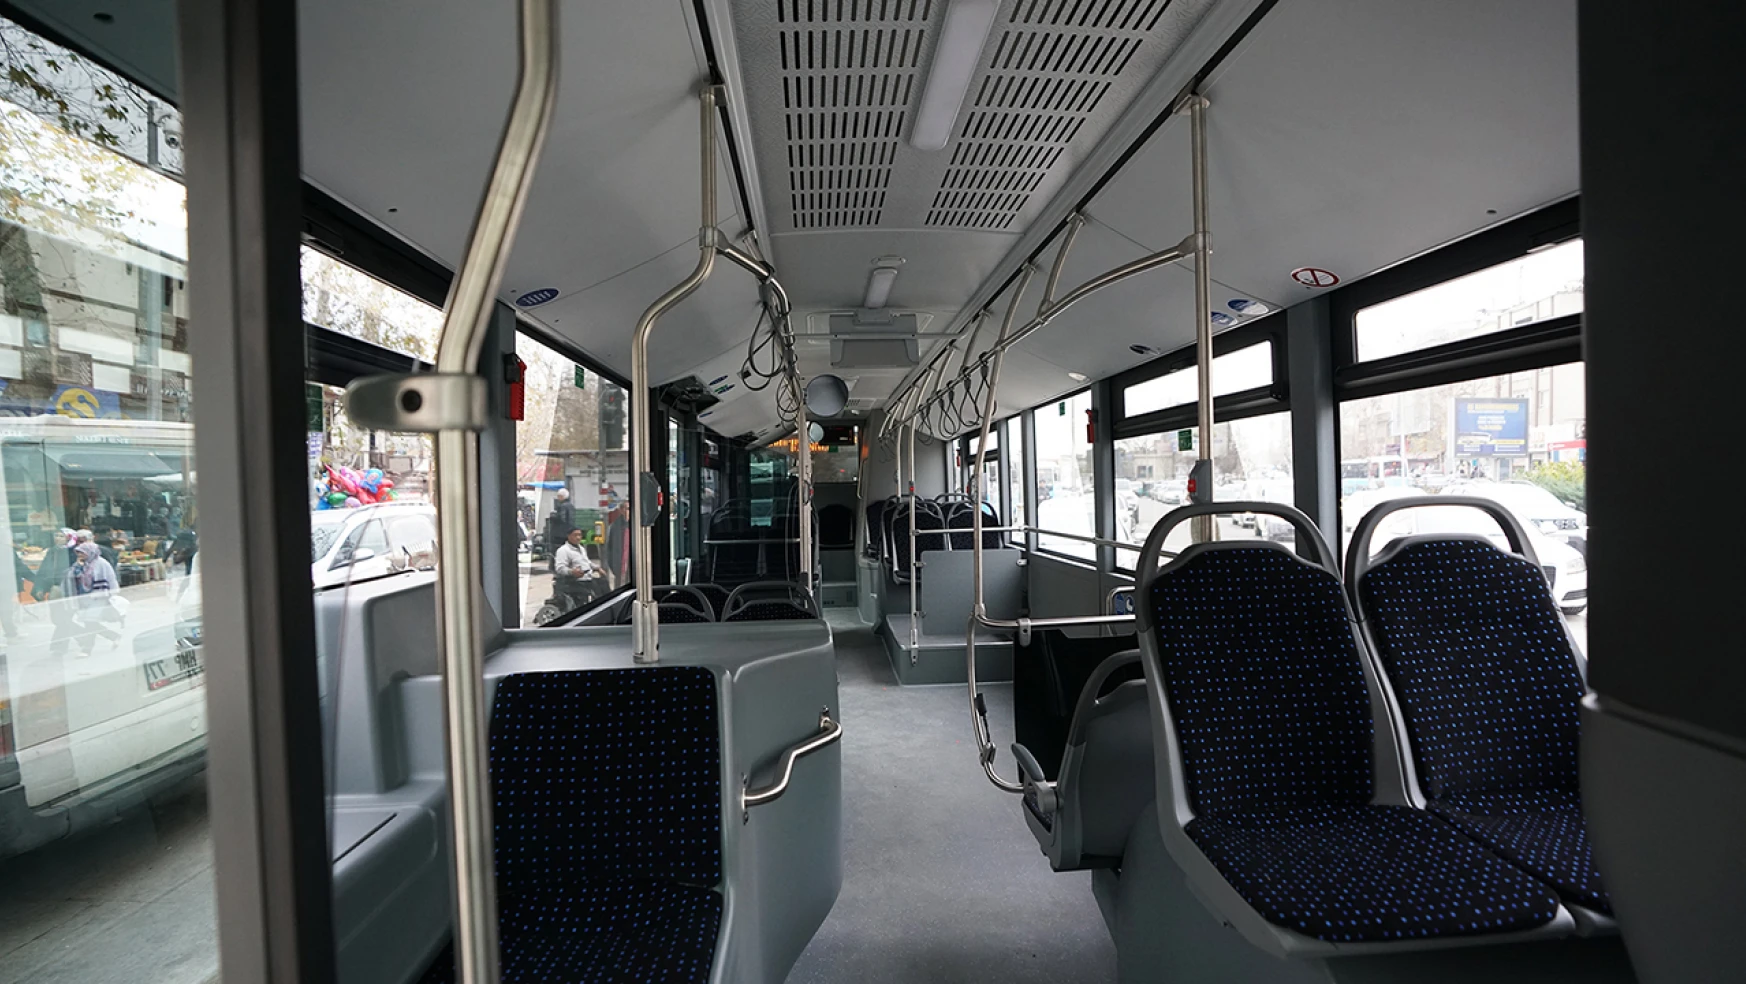 Toplu taşıma filosu, 10 hibrit otobüsle güçlendiriliyor